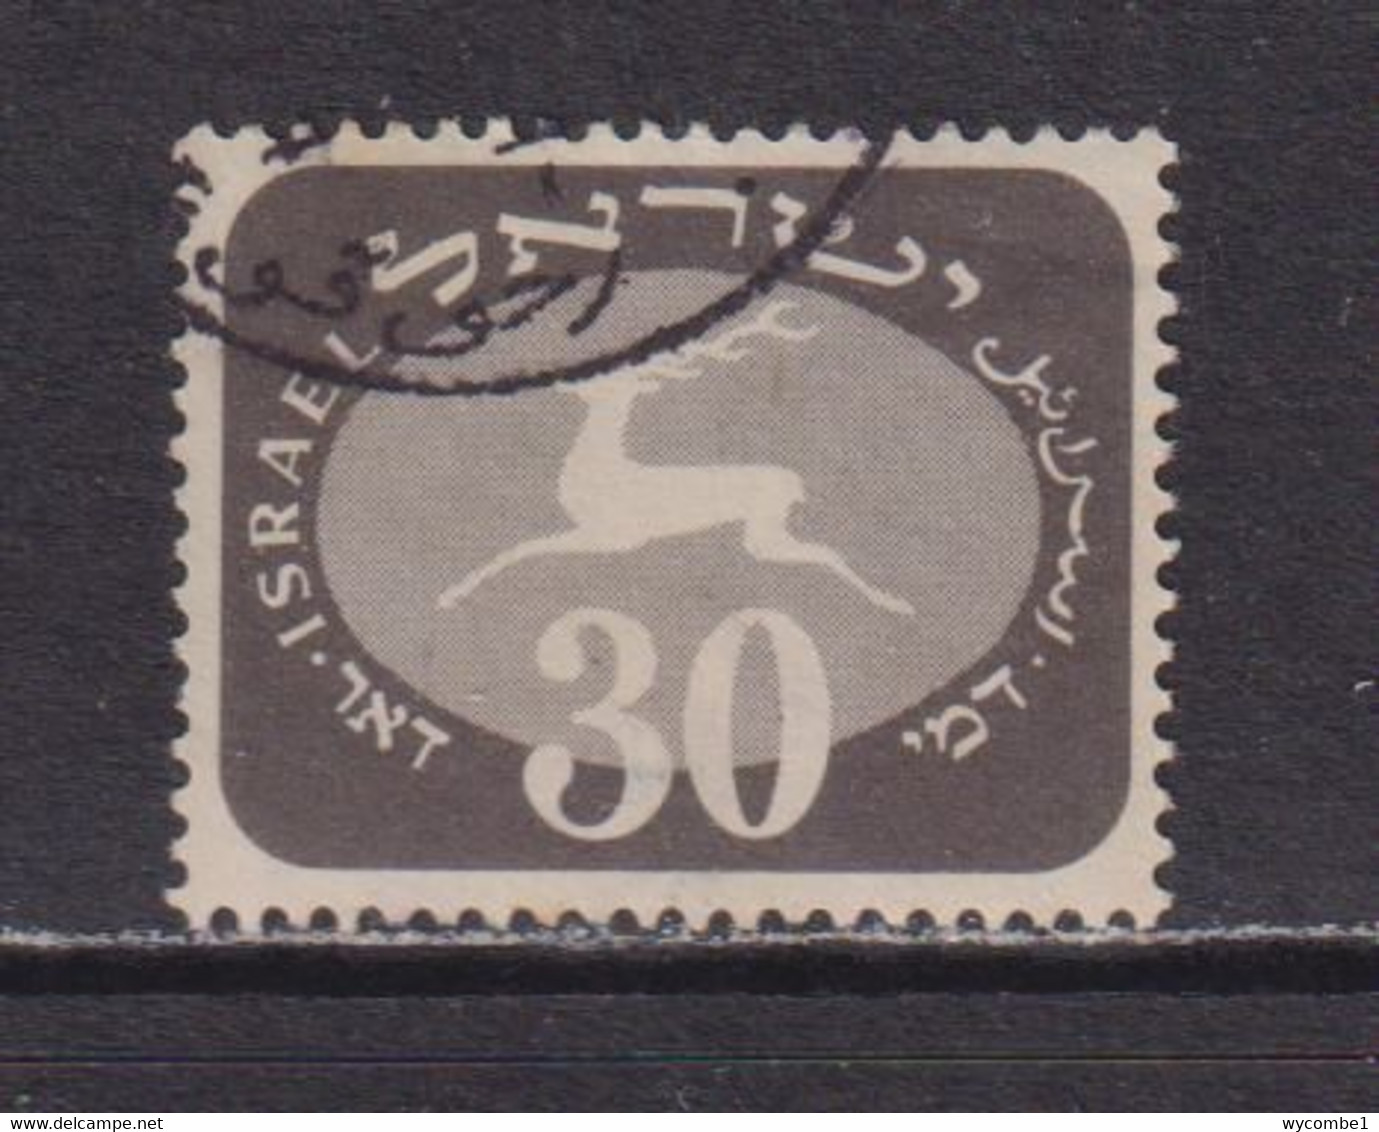 ISRAEL - 1952 Postage Due 30pr Used As Scan - Impuestos